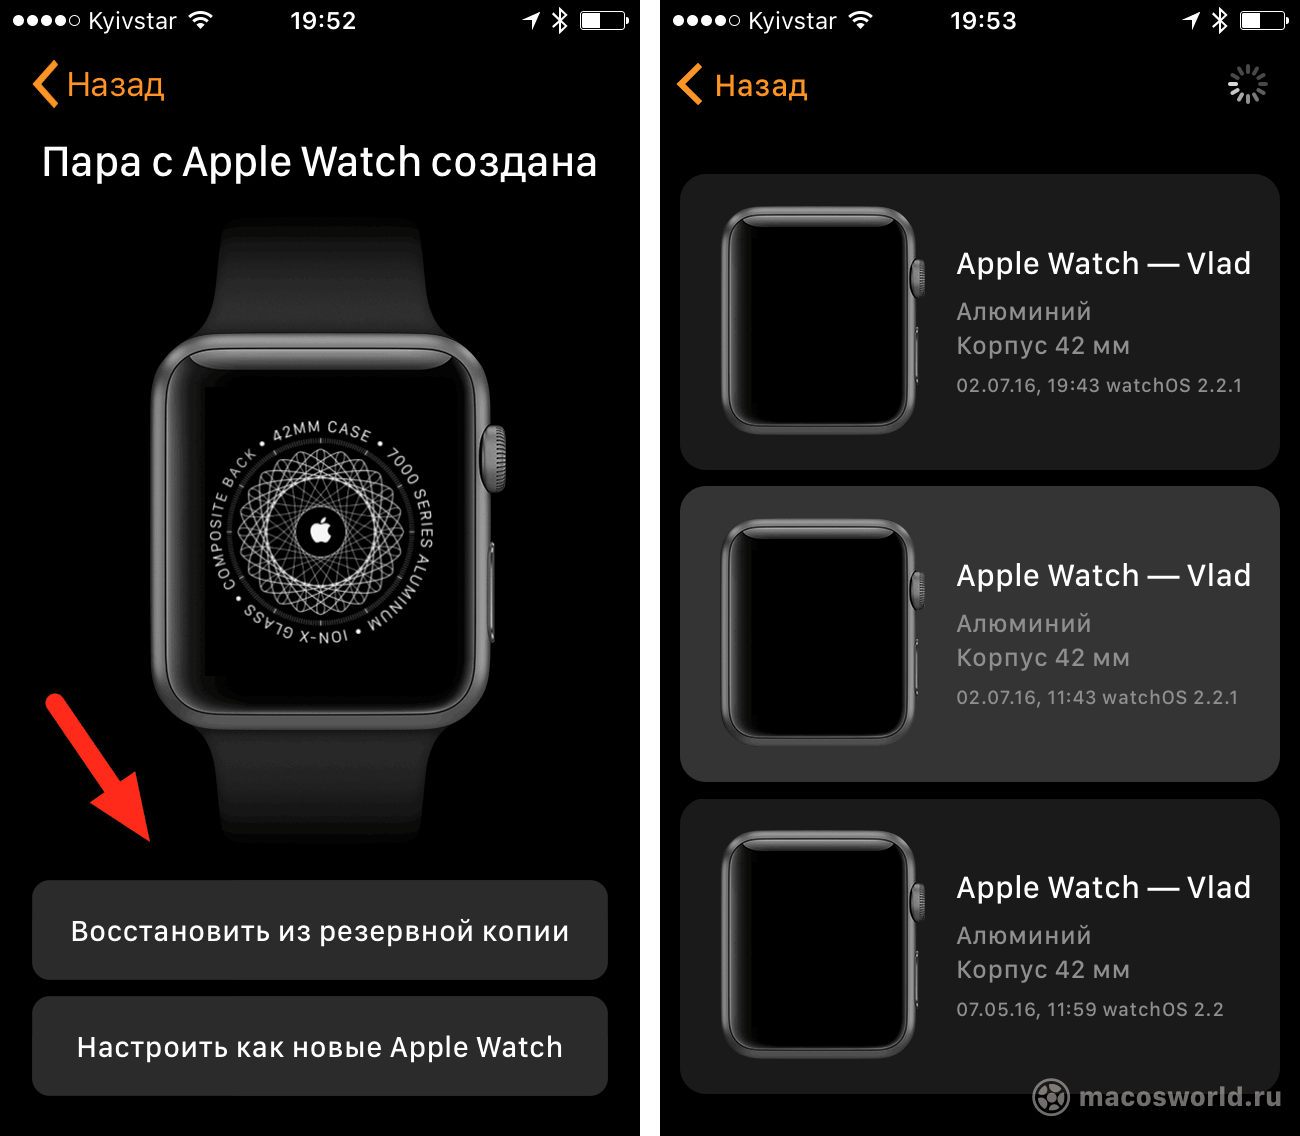 Как проверить оригинальность часов apple. Часы эпл вотч экран. Часы реплика Эппл вотч. Реплика часов и оригинал Эппл вотч.